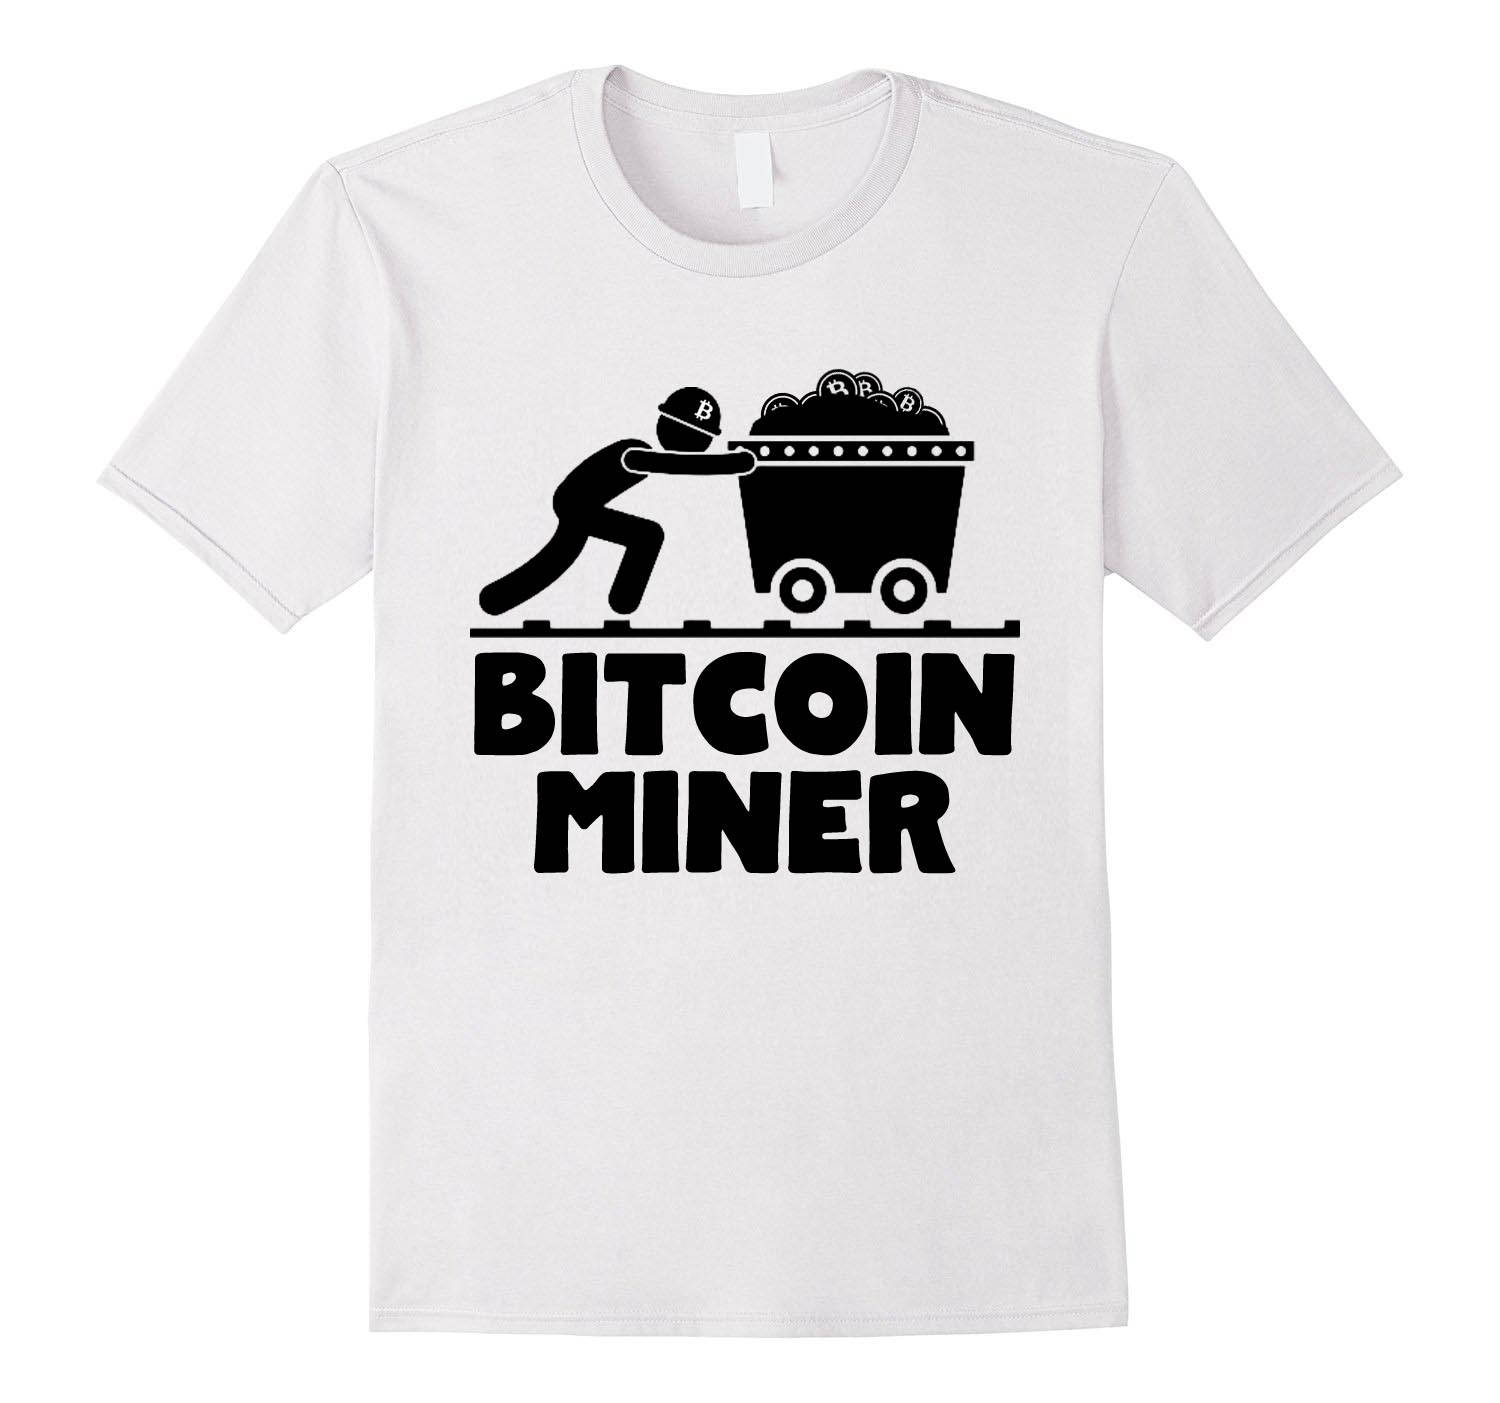 Bitcoin Mining Shirt Bitcoin Miner Funny and Nerdy Crypto